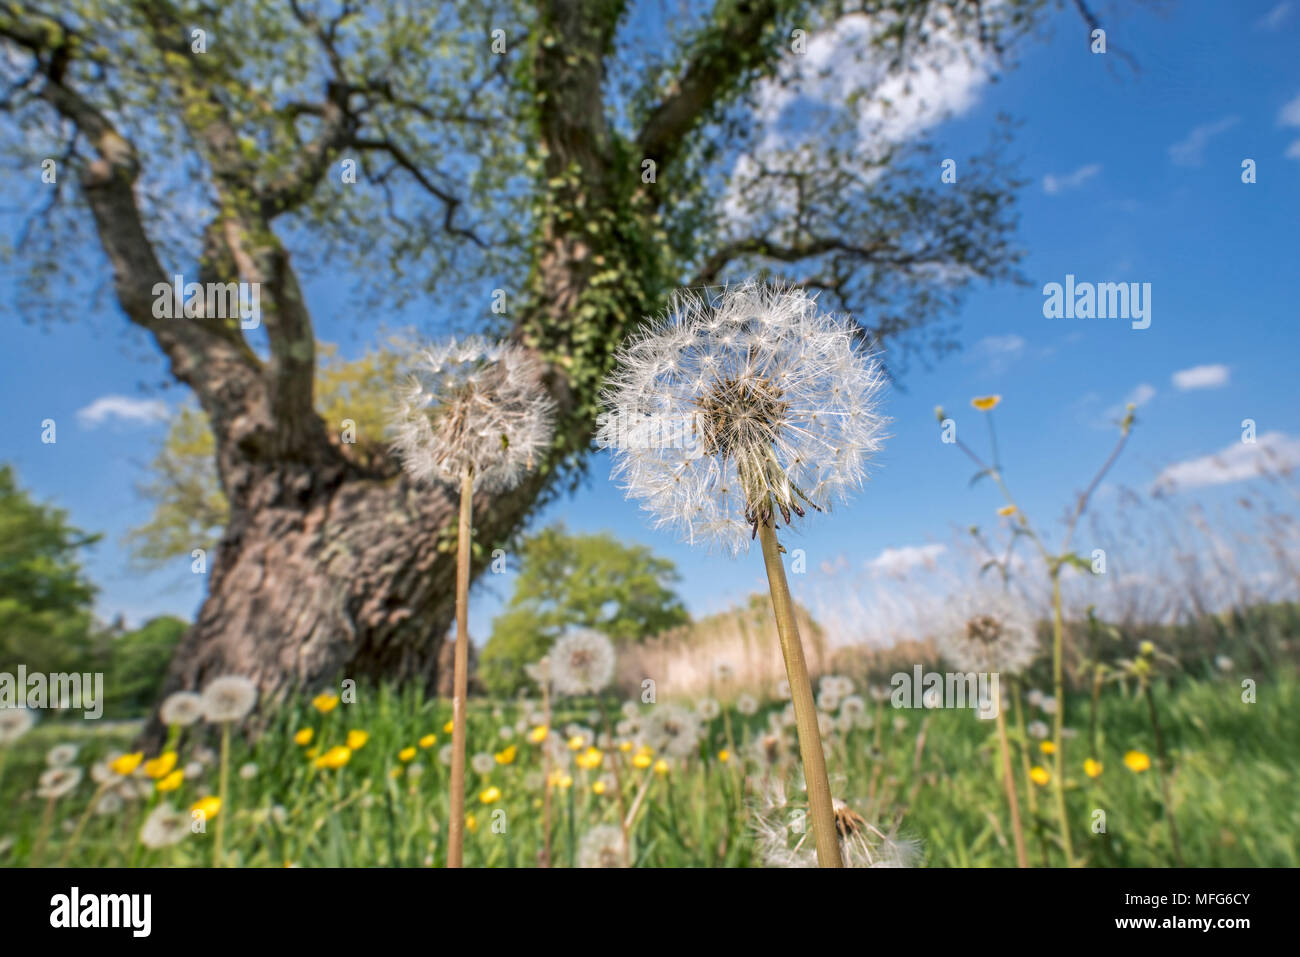 Saatgut Staats gemeinsame Löwenzahn (Taraxacum officinale) unter englischer Eiche/Pedunculate oak tree (Quercus robur) in der Wiese im Frühjahr Stockfoto